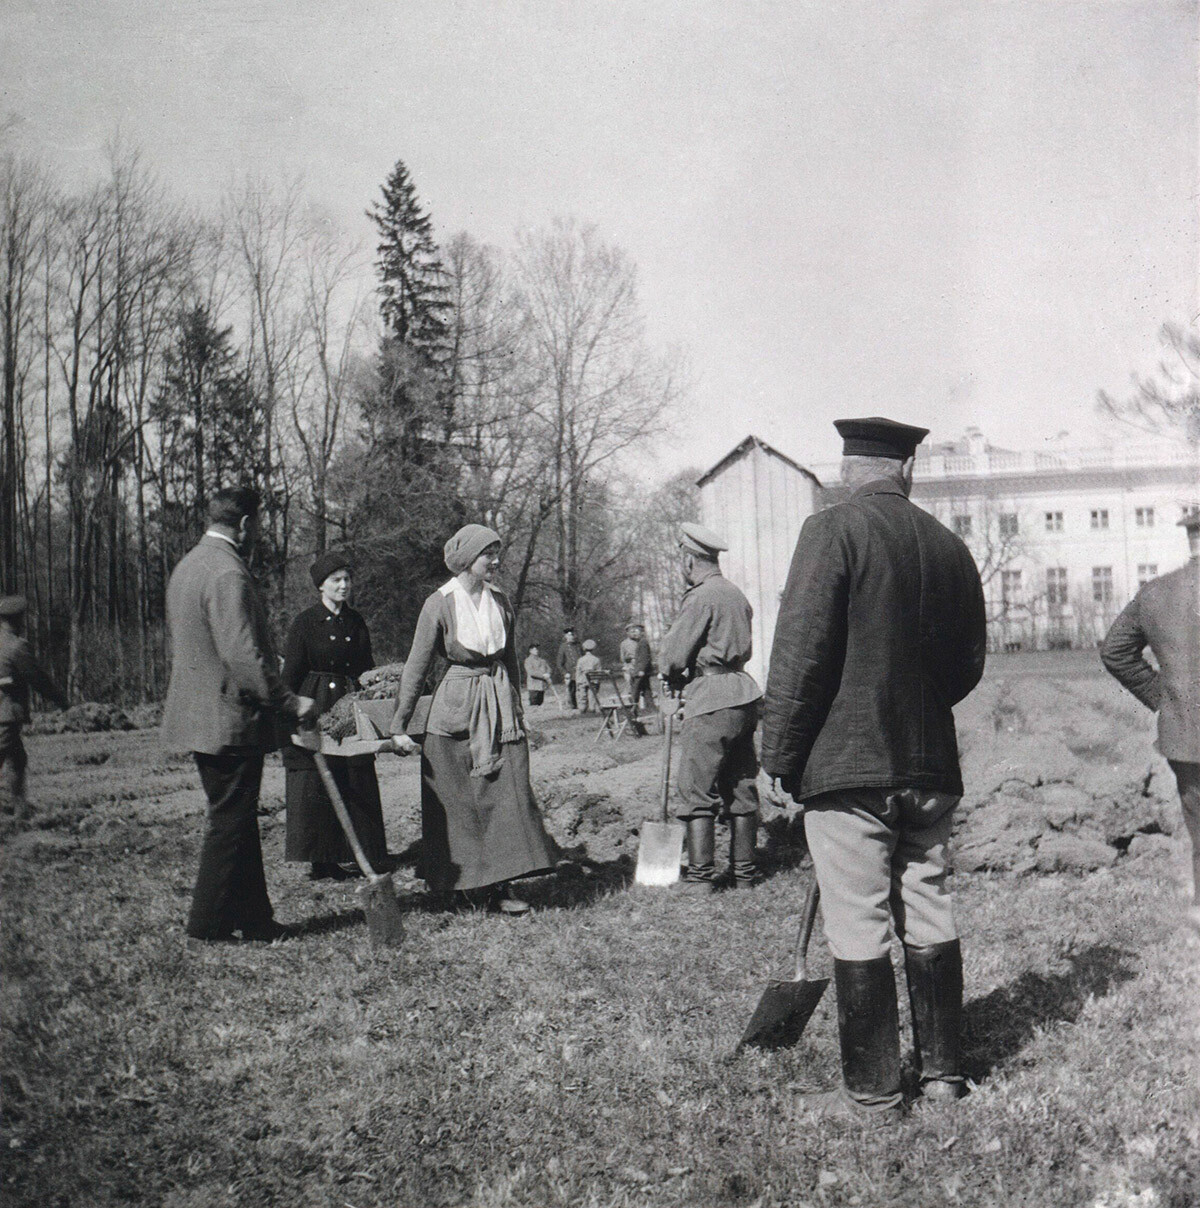 ニコライ2世一家の逮捕。ツァールスコエ・セロー、1917年